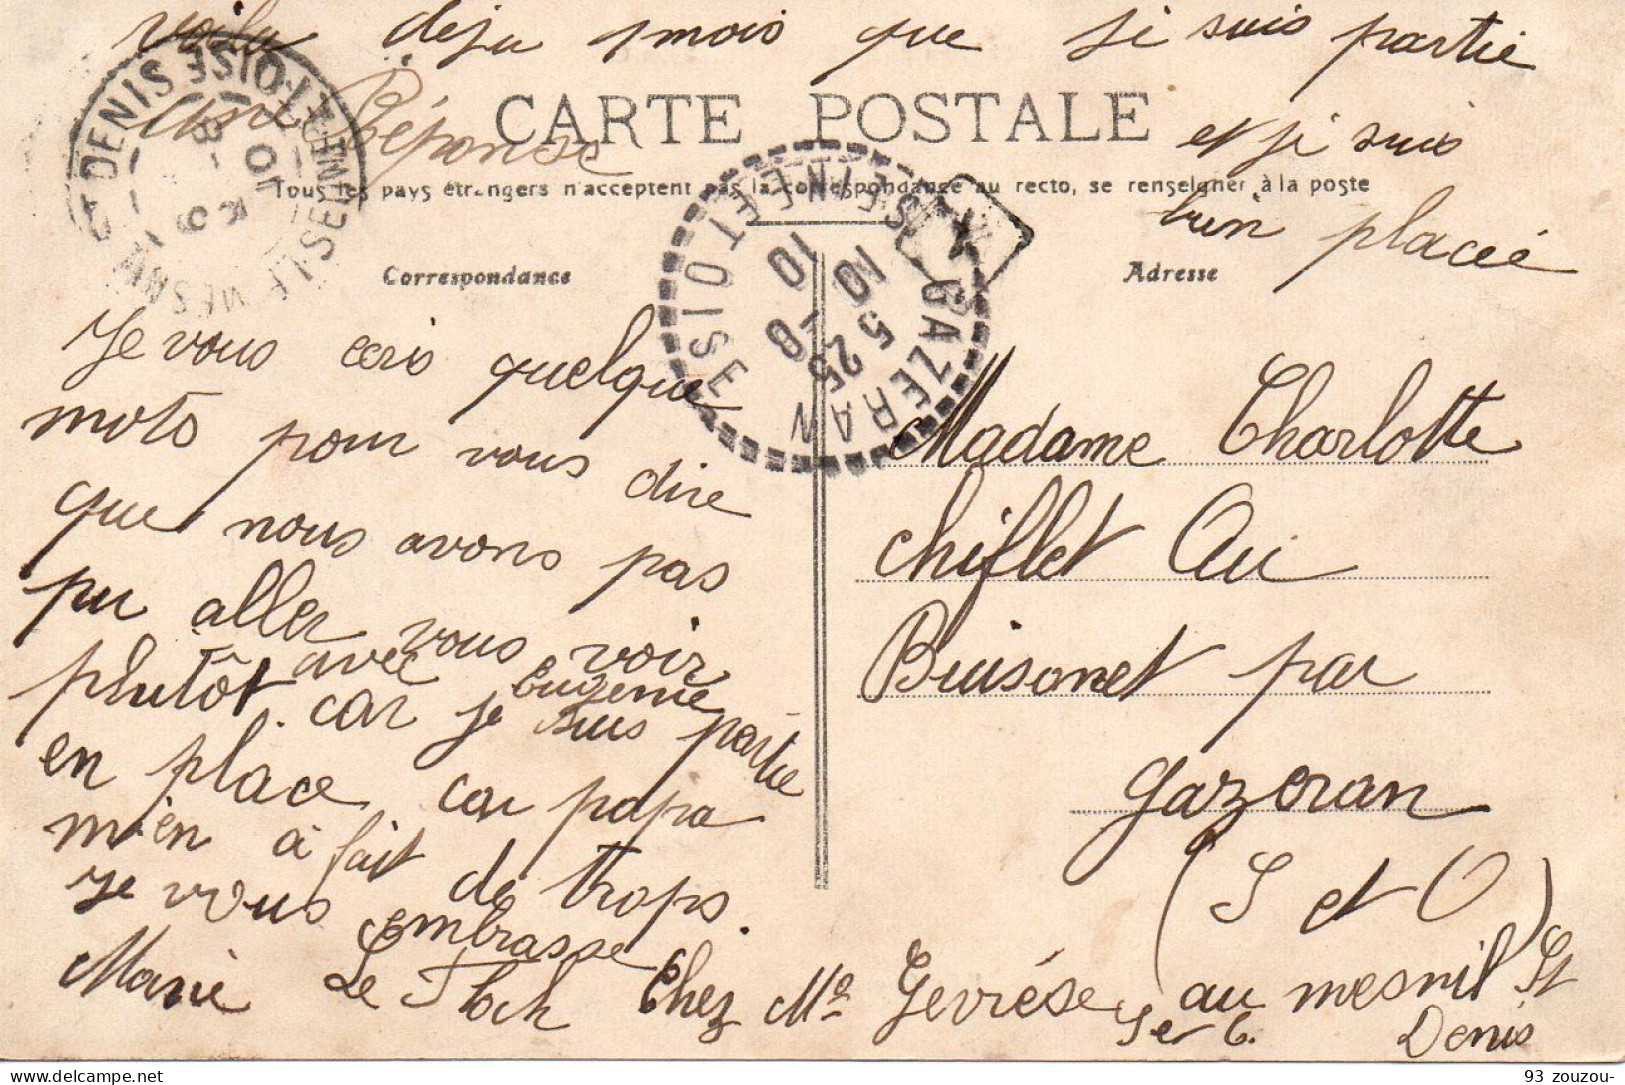 78. Chateau De Laverriere. Animée.   Carte Impeccable 1910 - La Verriere